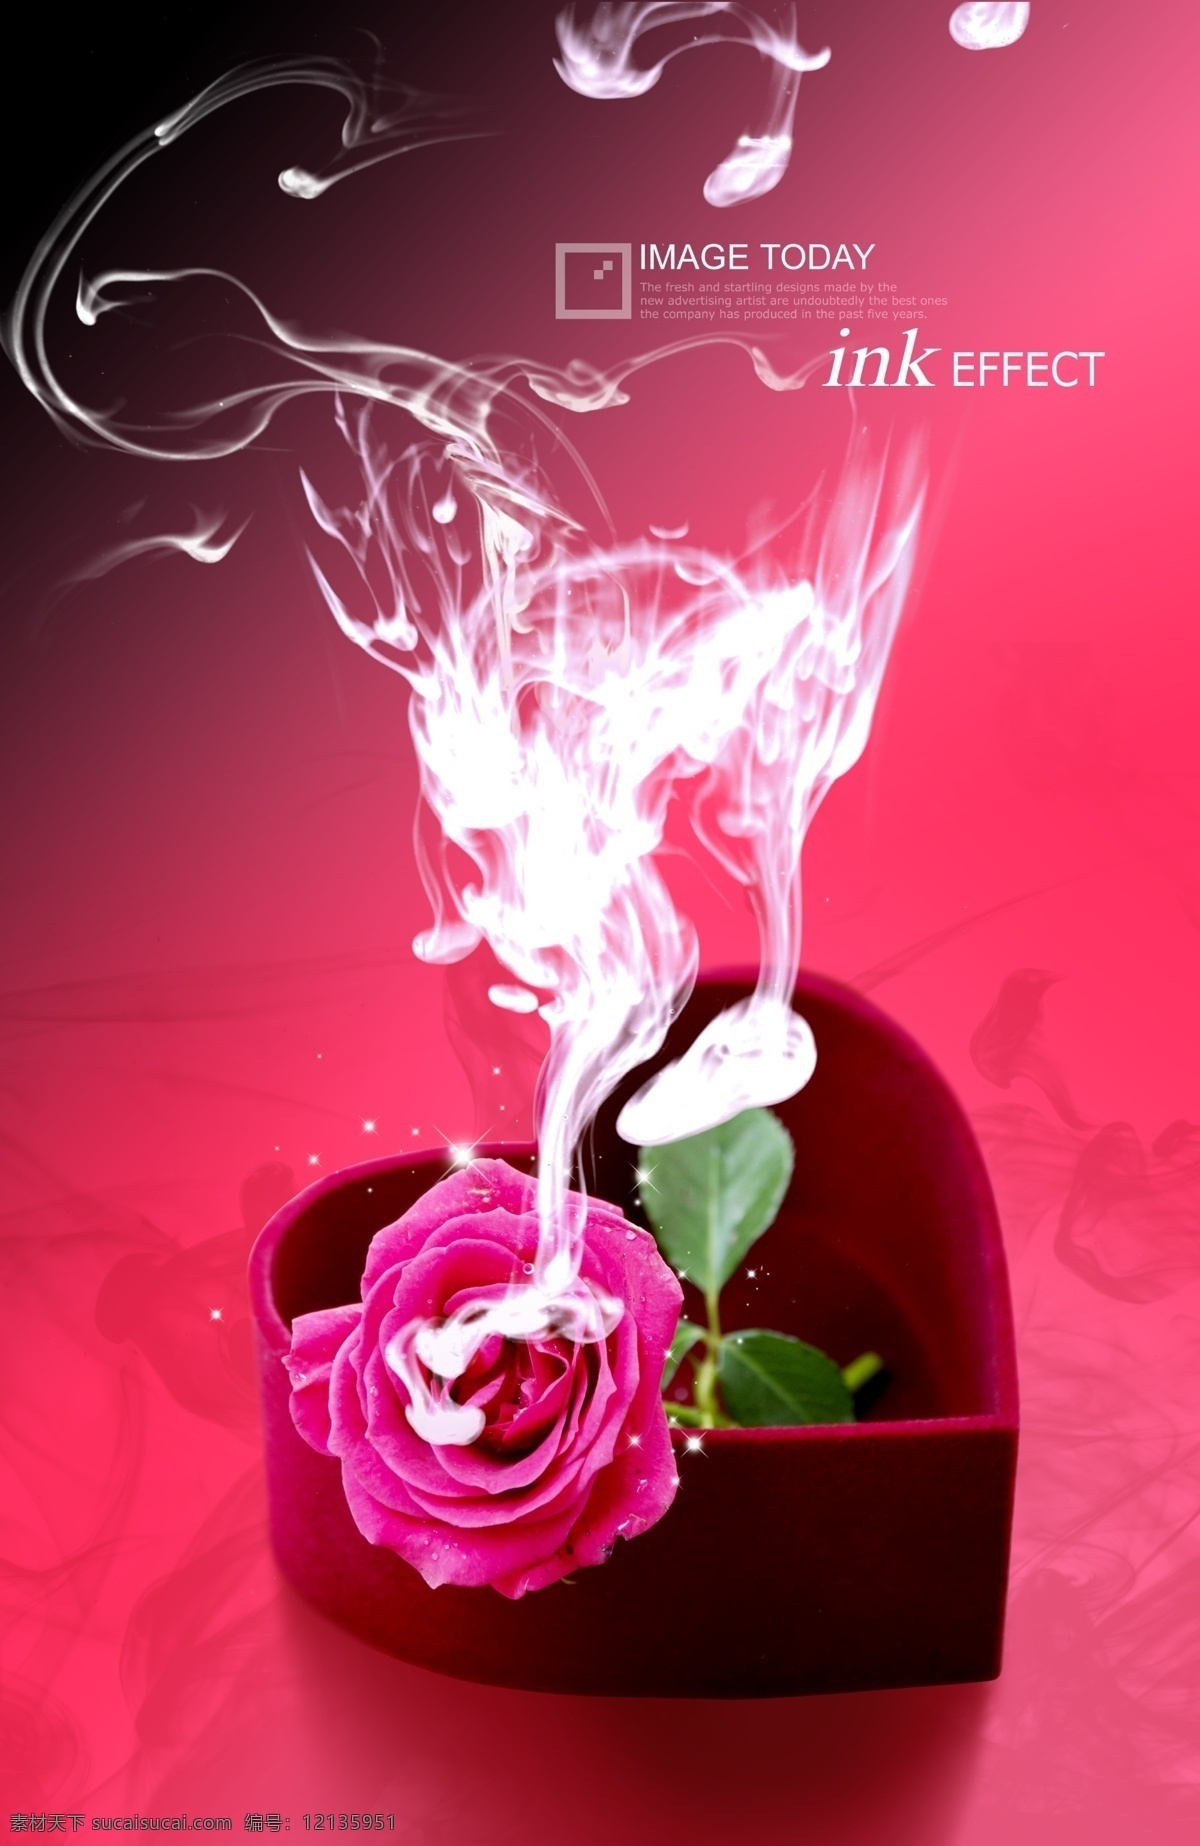 时尚 时尚元素 烟雾 梦幻 炫彩 礼盒 玫瑰 爱情 甜蜜 广告设计模板 psd素材 红色